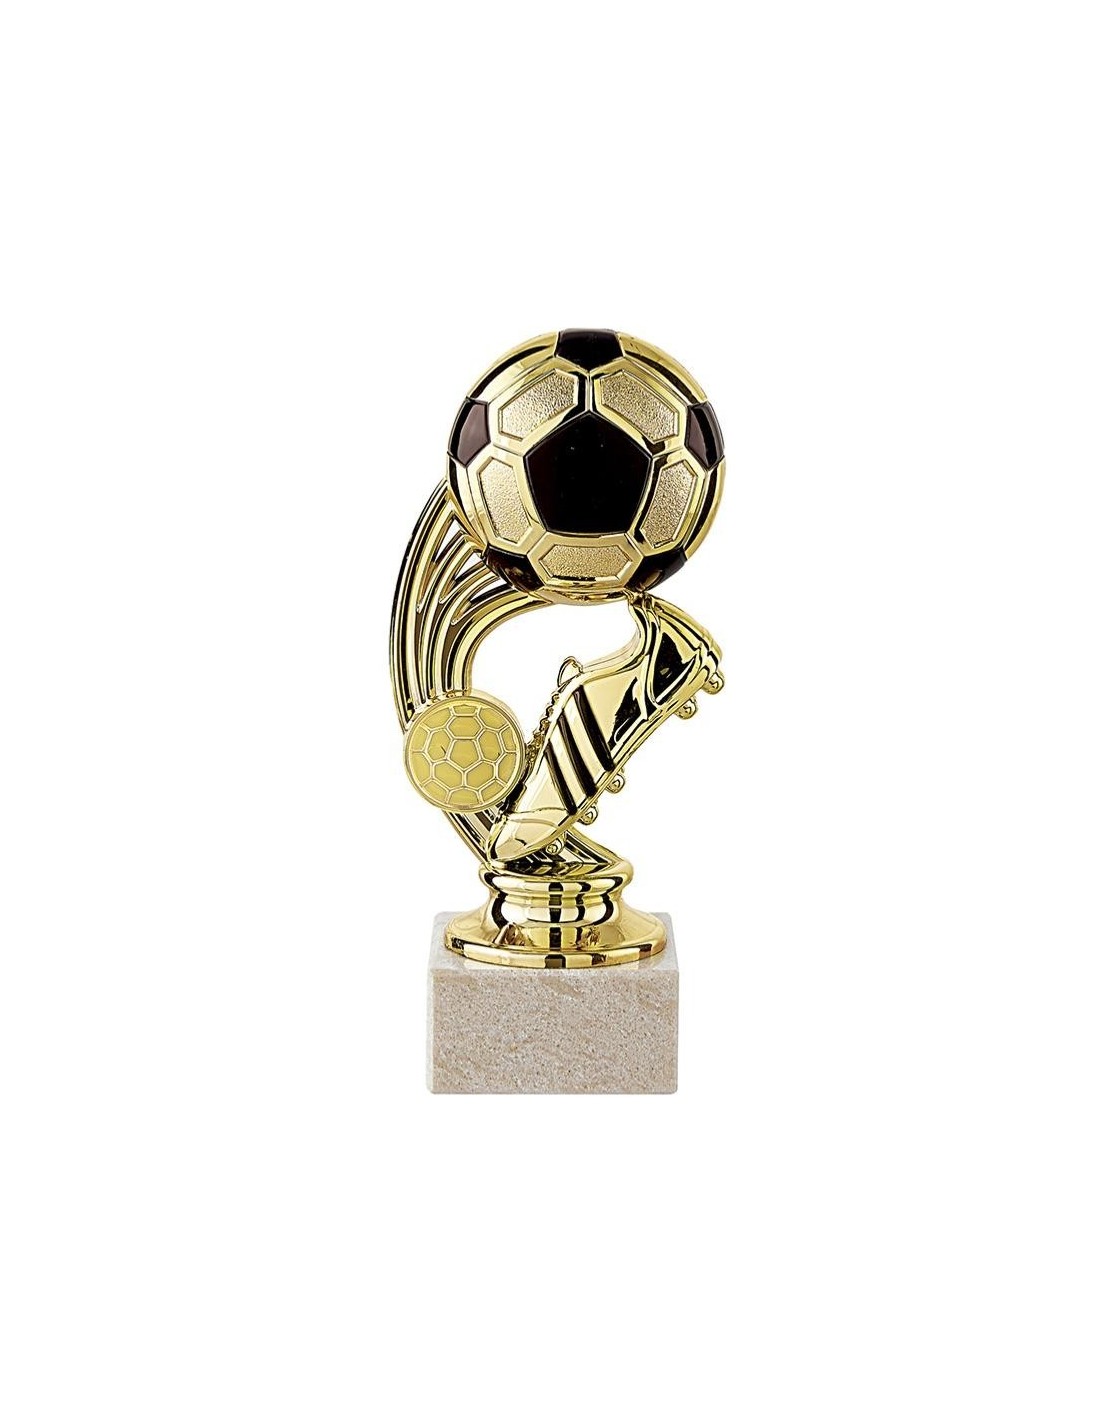 Achetez La Récompense Parfaite : Trophée Abs Football - Tp5064